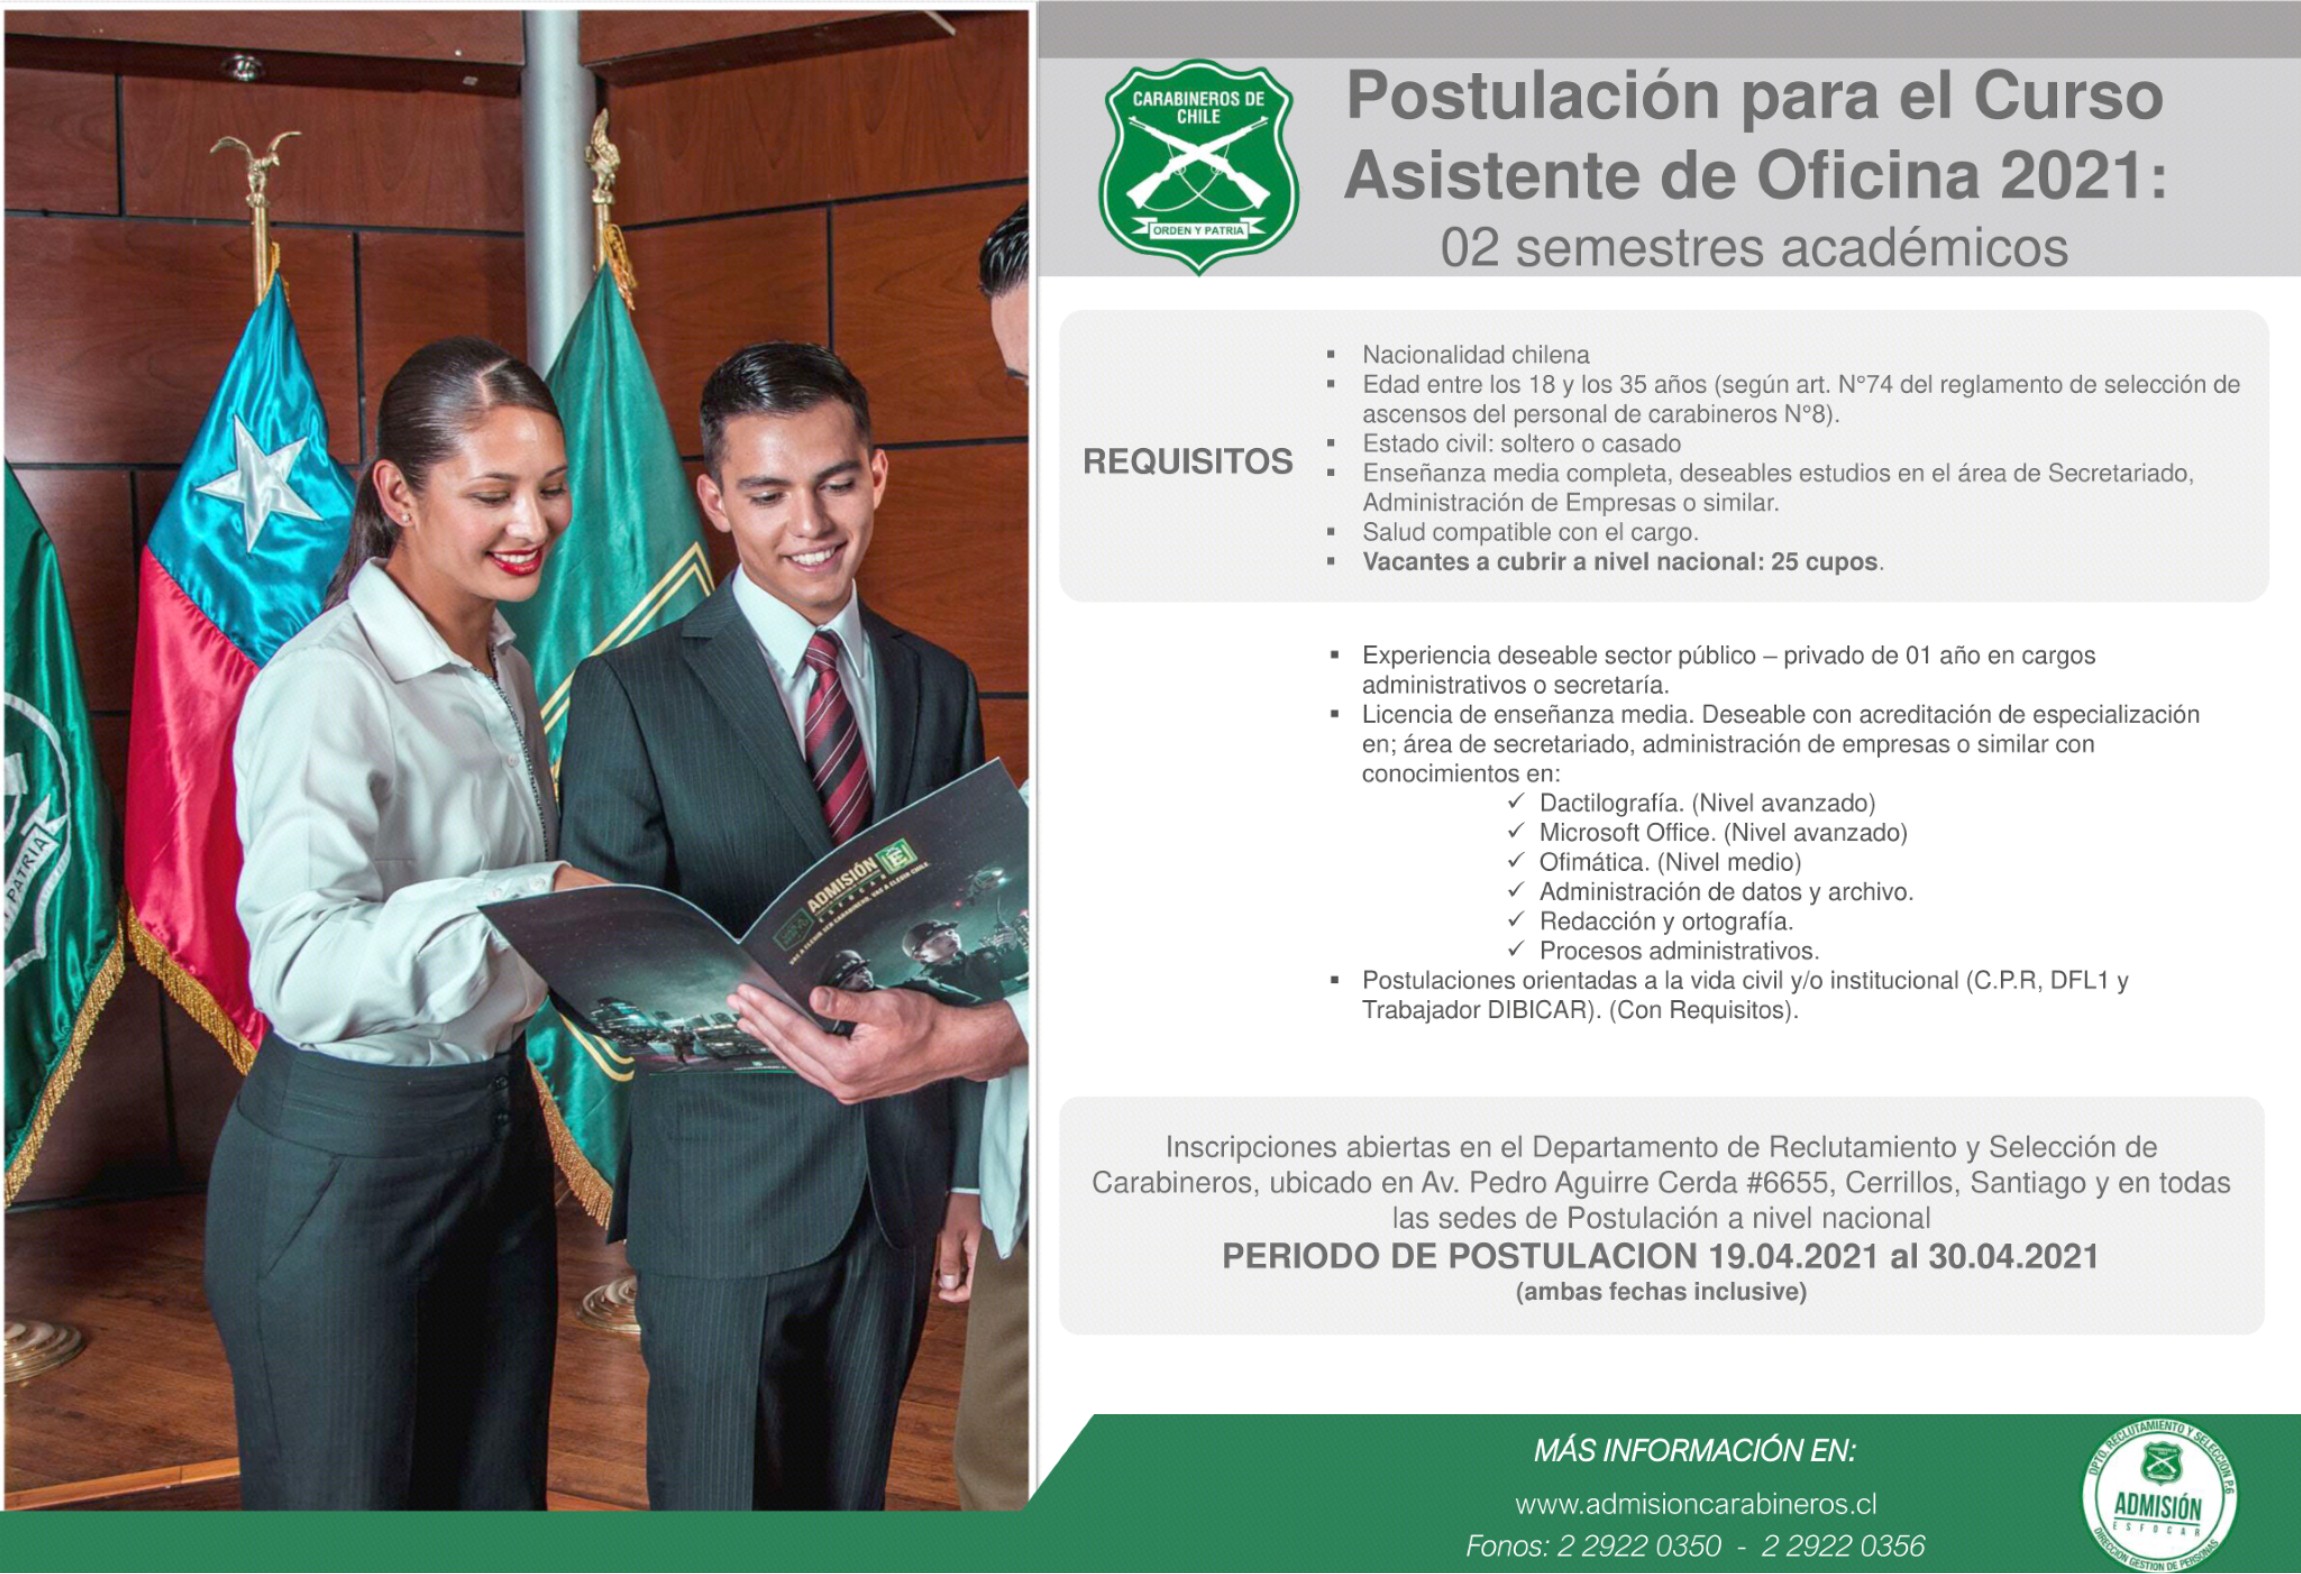 ACONCAGUA: Postulaciones de la Prefectura Aconcagua anunció proceso de admisión para labores administrativas en Carabineros